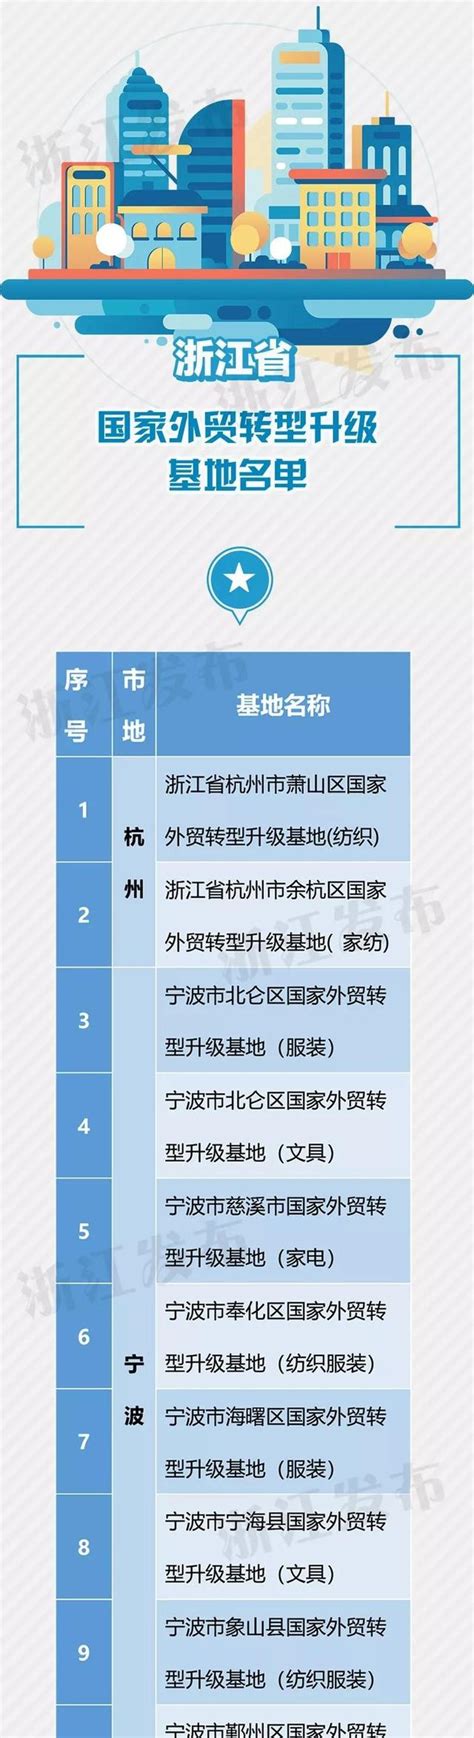 2020年1-12月嘉兴市外贸企业紧固件出口50强-华人螺丝网